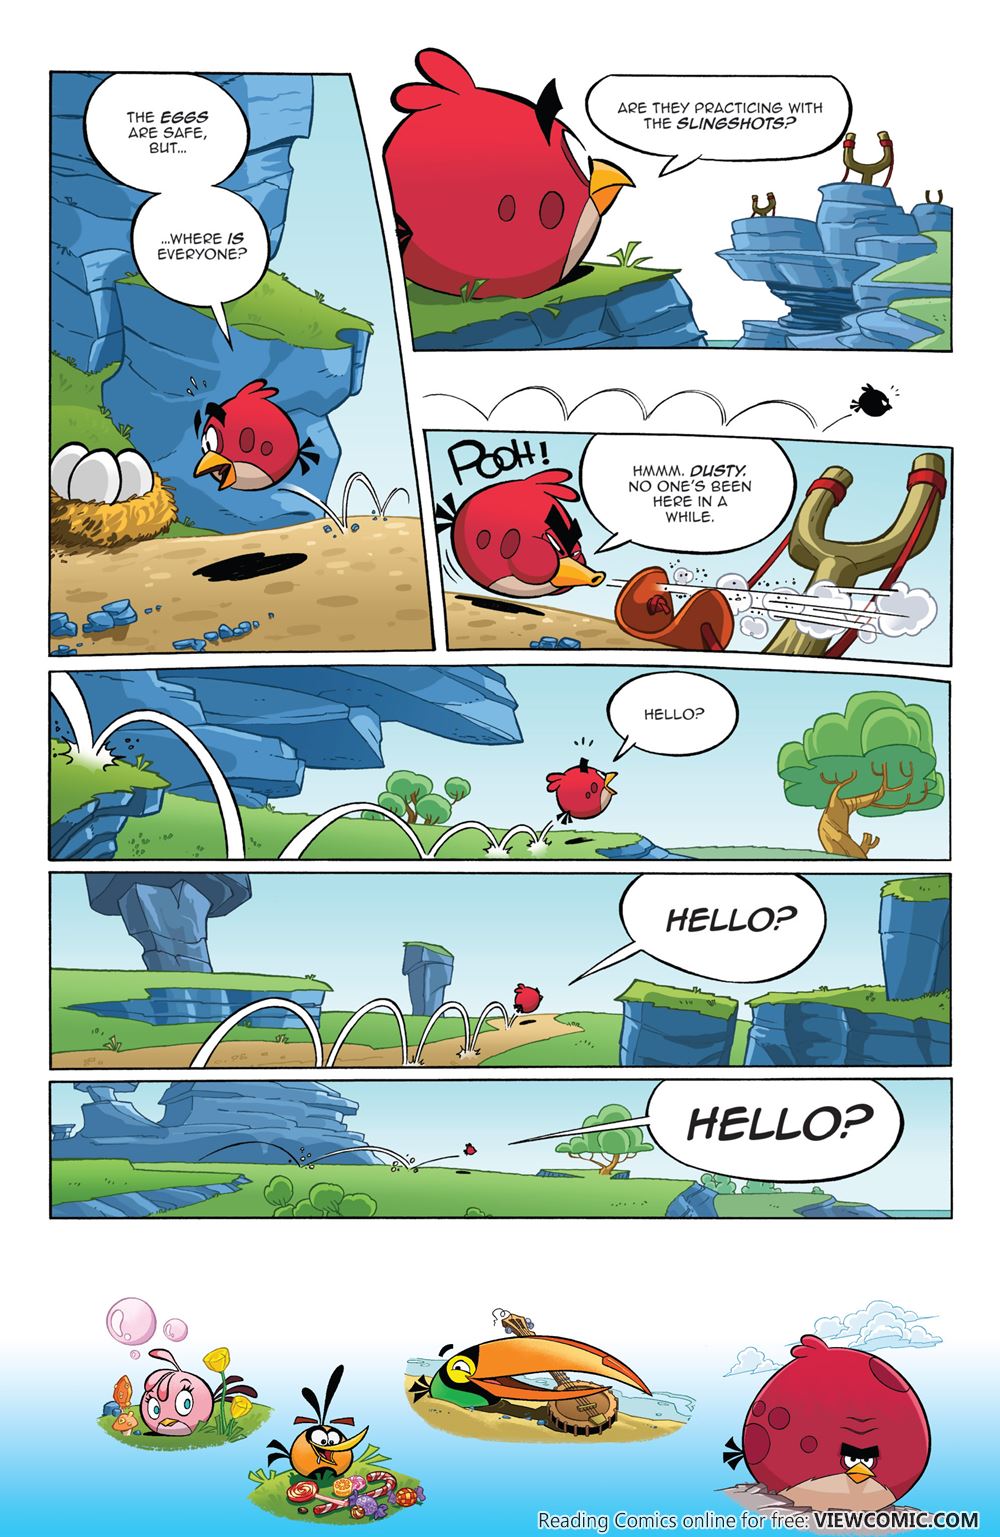 Angry Birds Gay Sex Porn - Angry Birds Comics v2 001 (2016) â€¦â€¦â€¦â€¦.â€¦â€¦ | Viewcomic reading ...